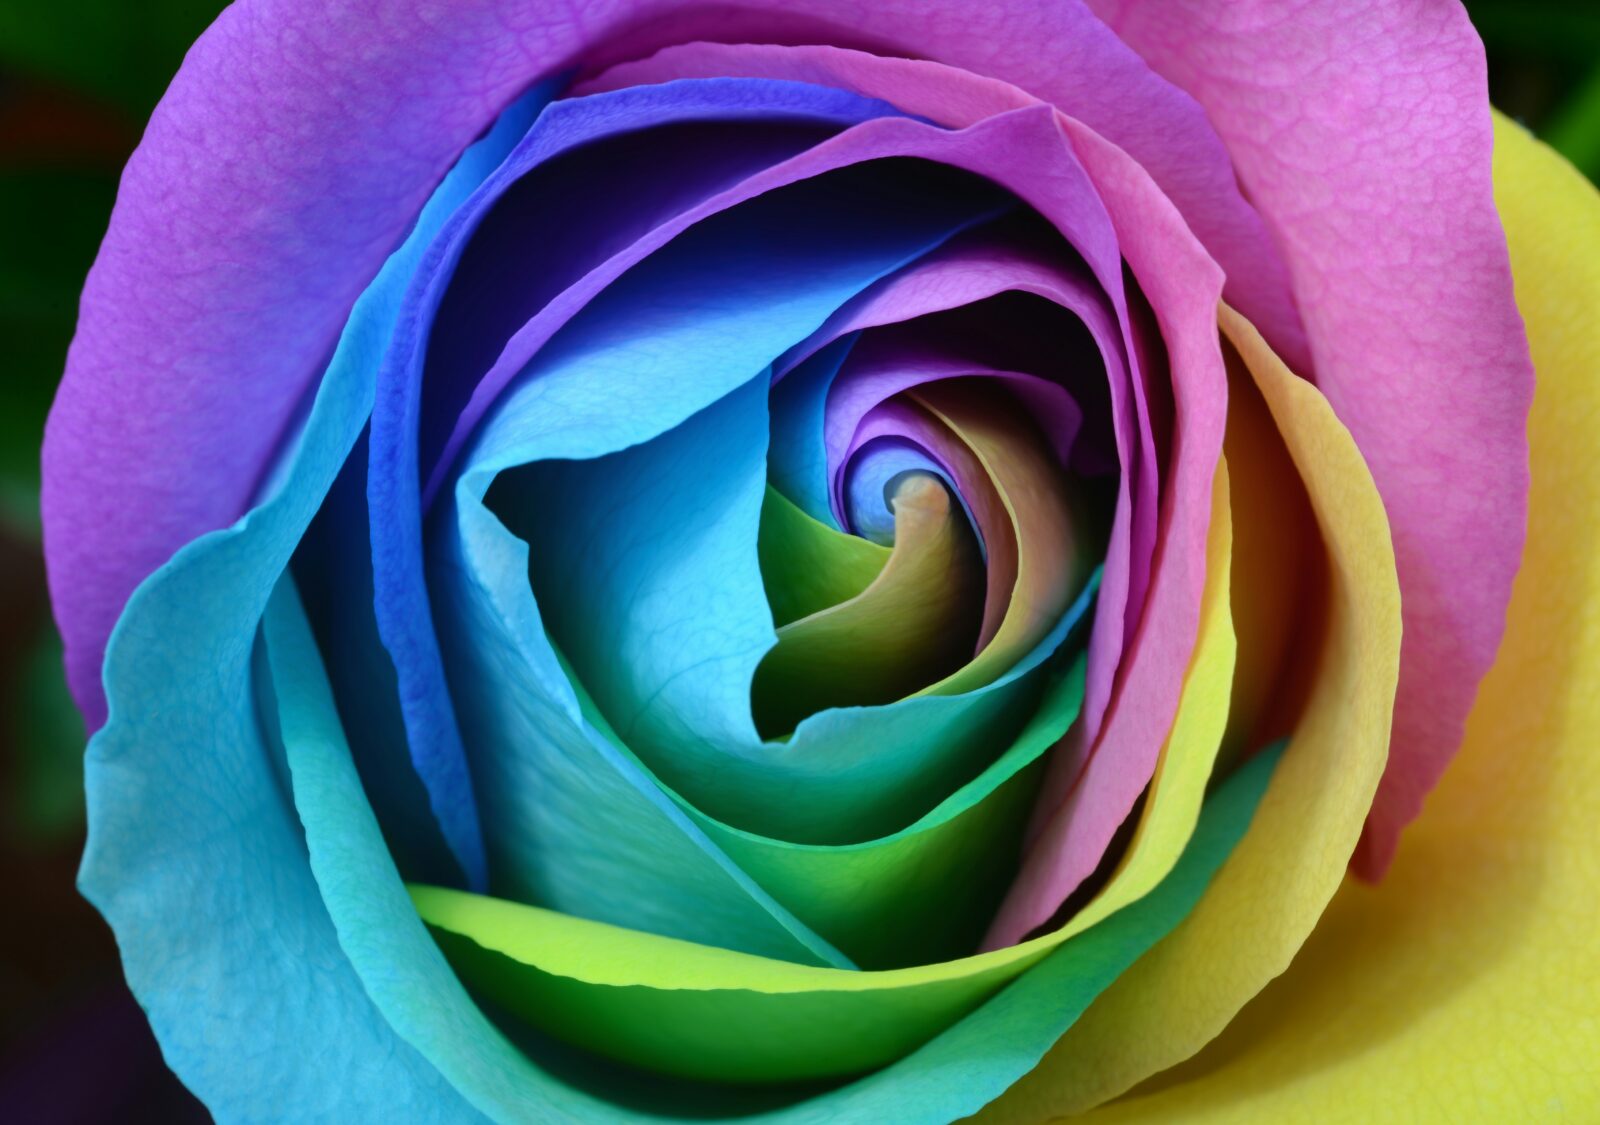 Spiral color rose